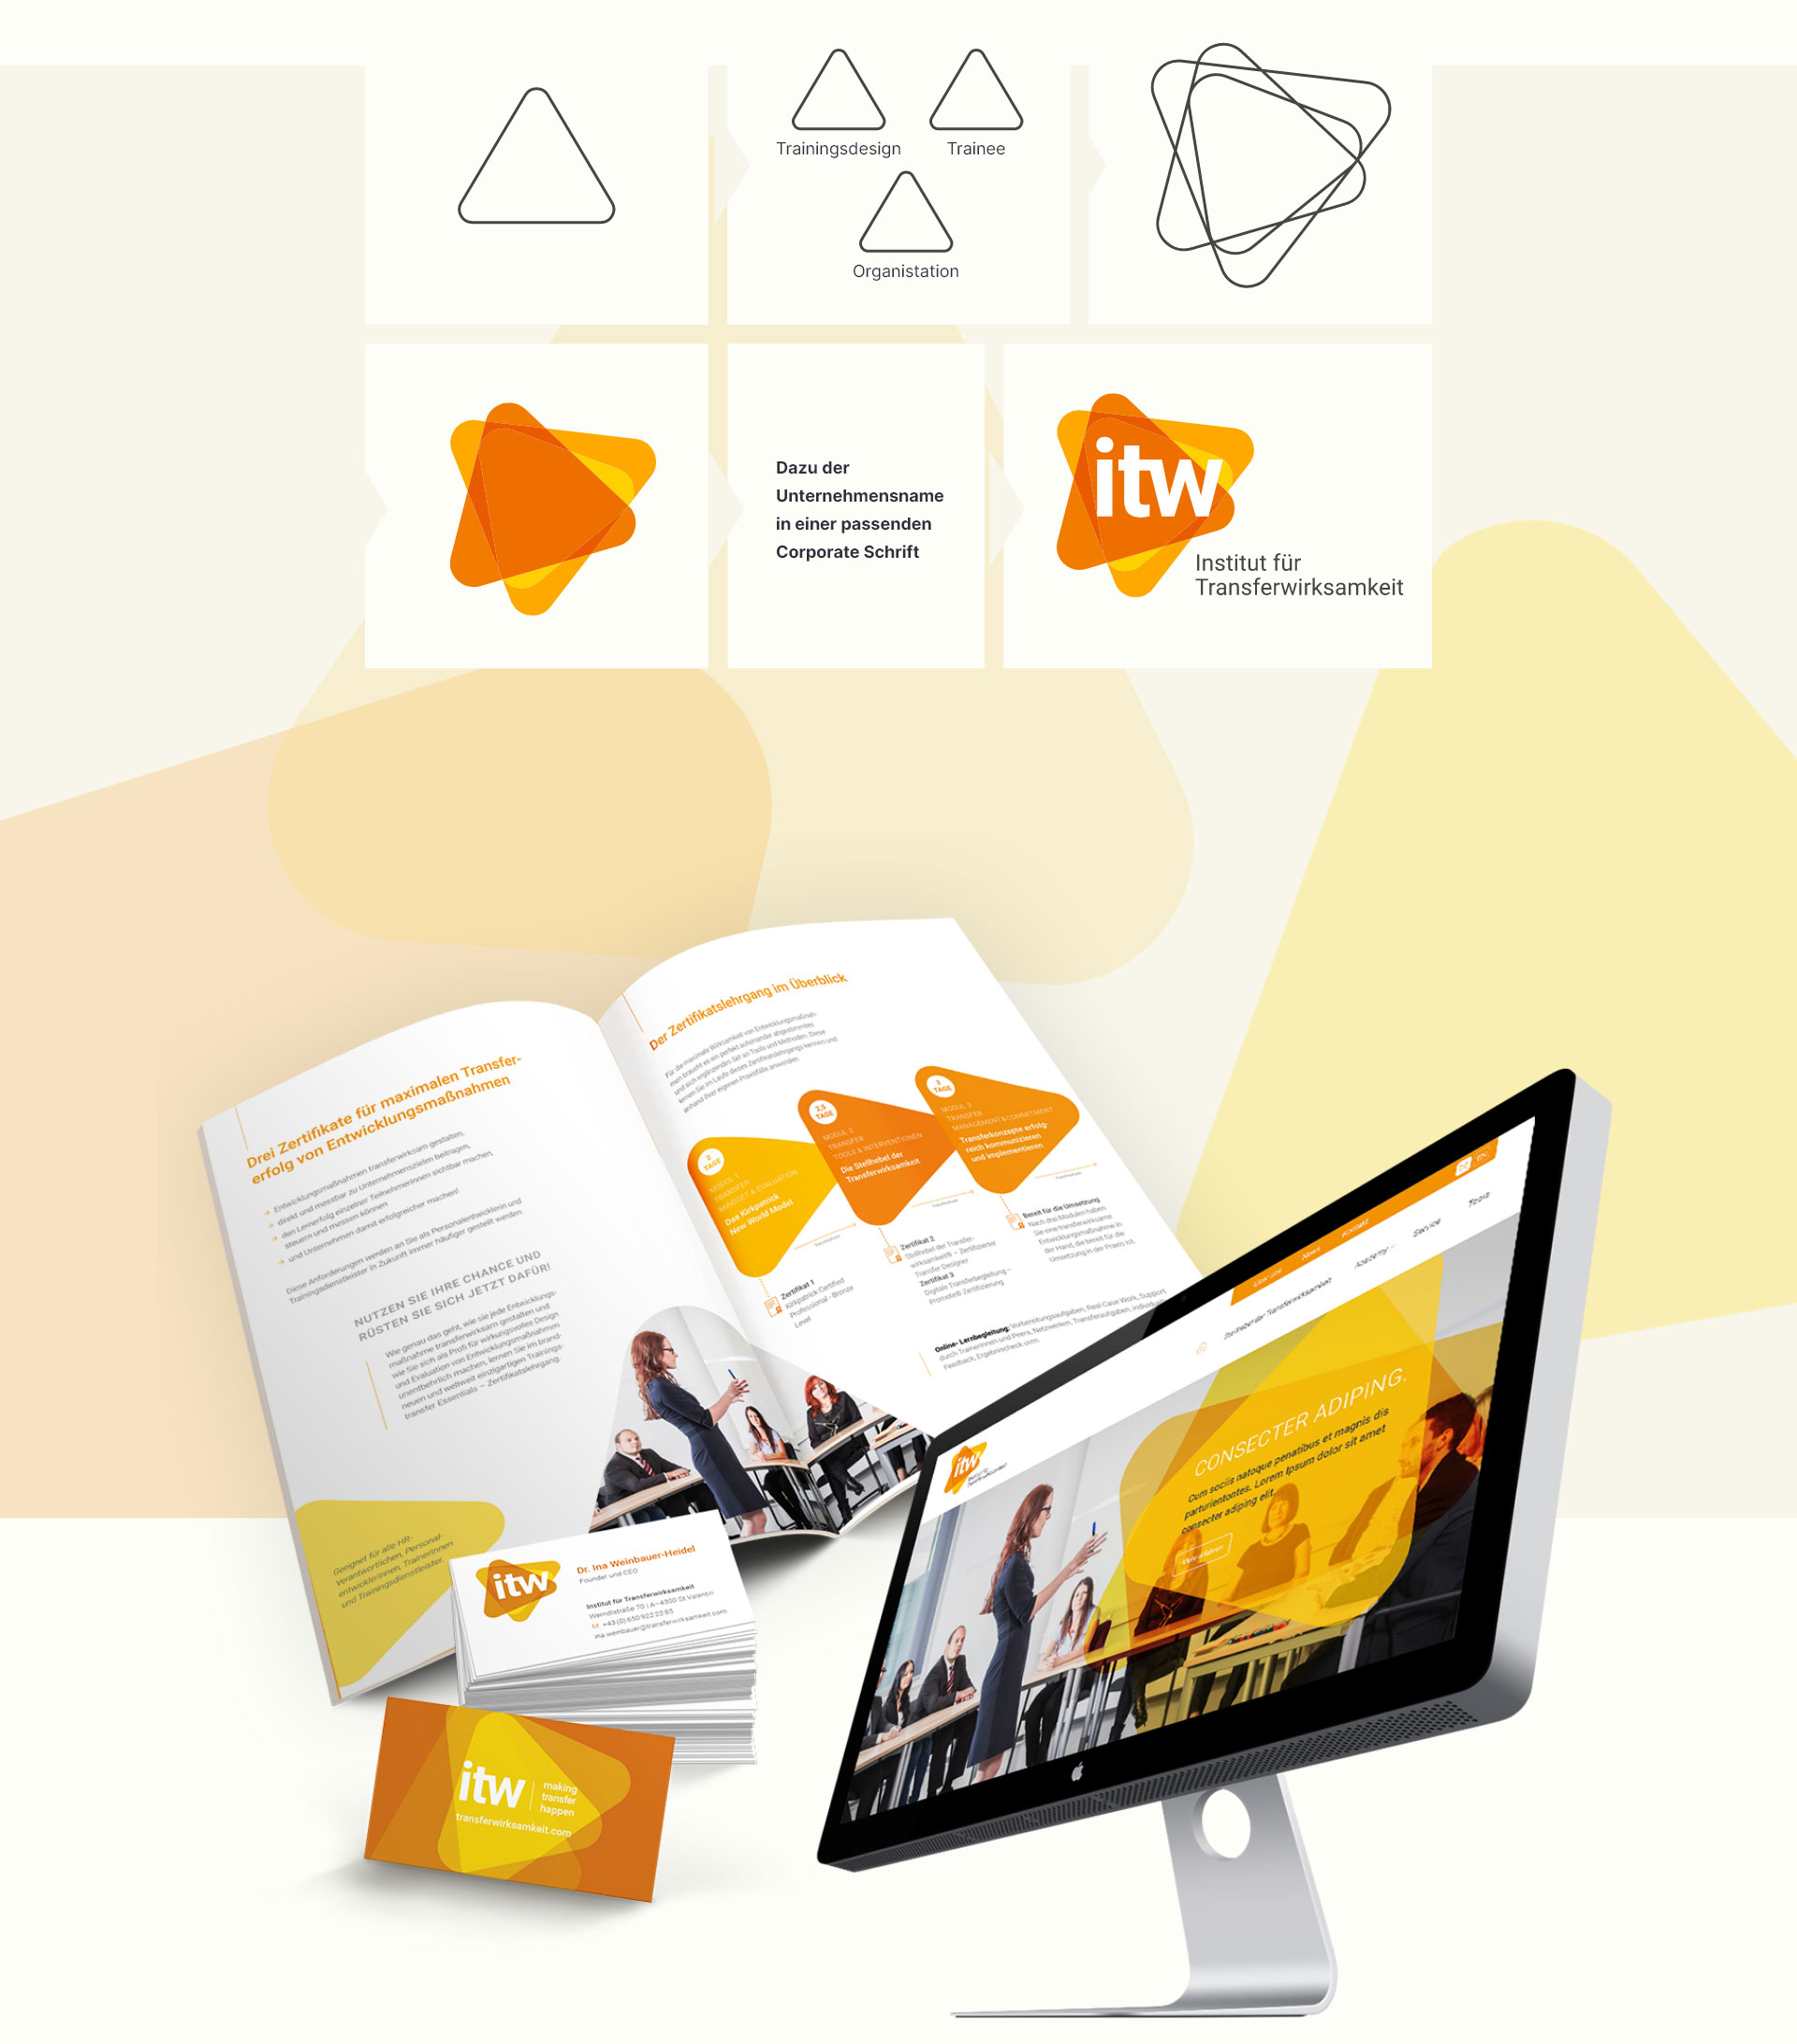 twin werbeagentur - Referenz - ITW - Coporate Design Collage mit Logo, Broschüre und Webseite